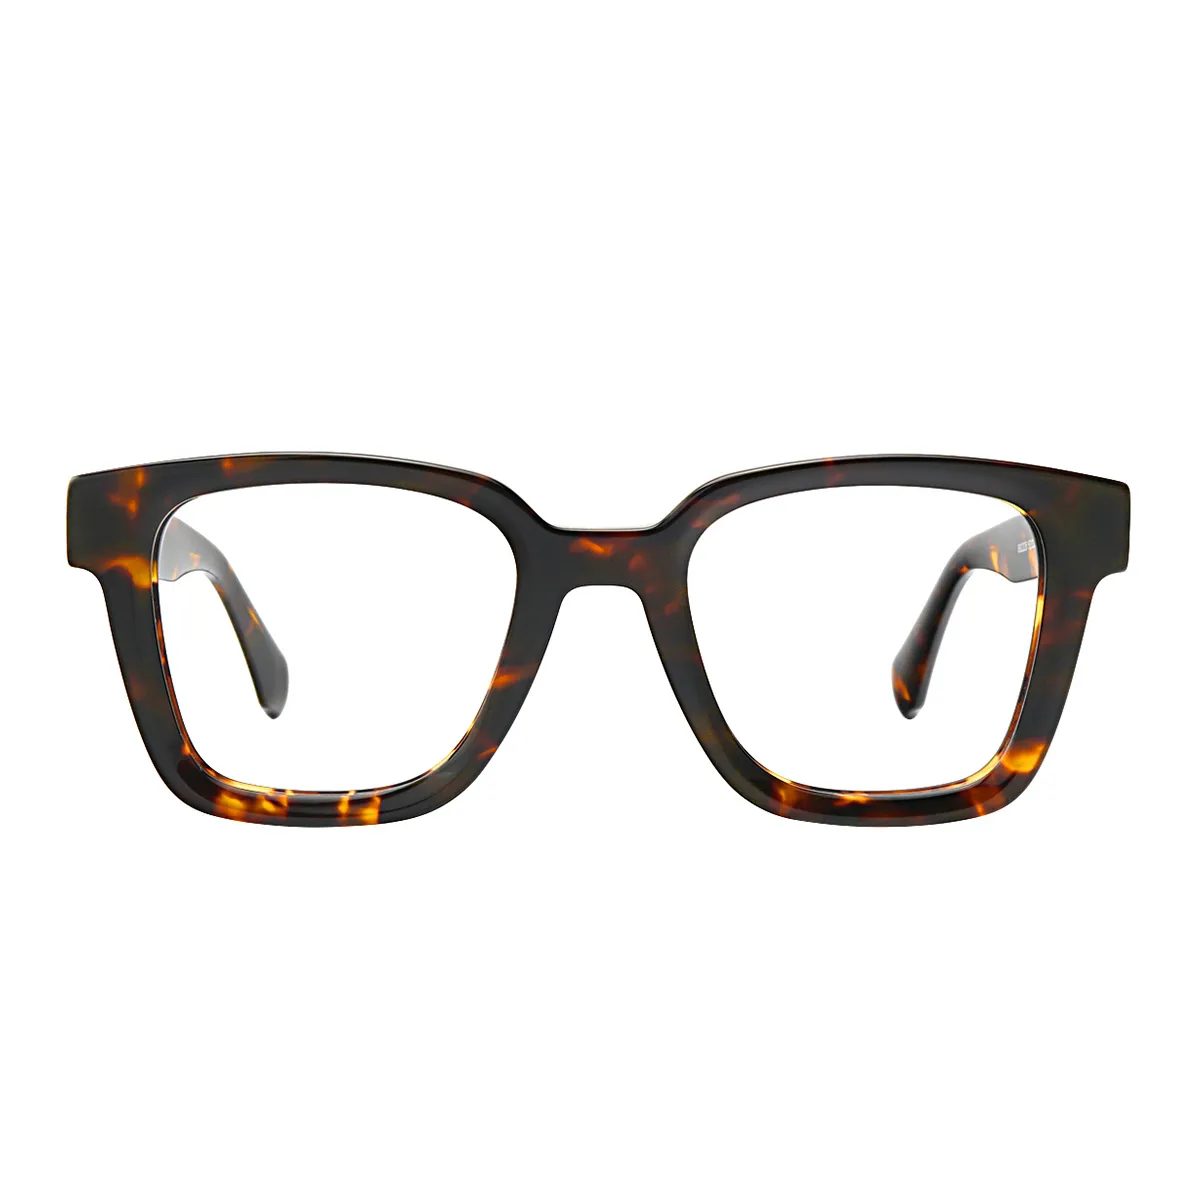 Vinyl - Square Tortoiseshell Glasses for Men & Women